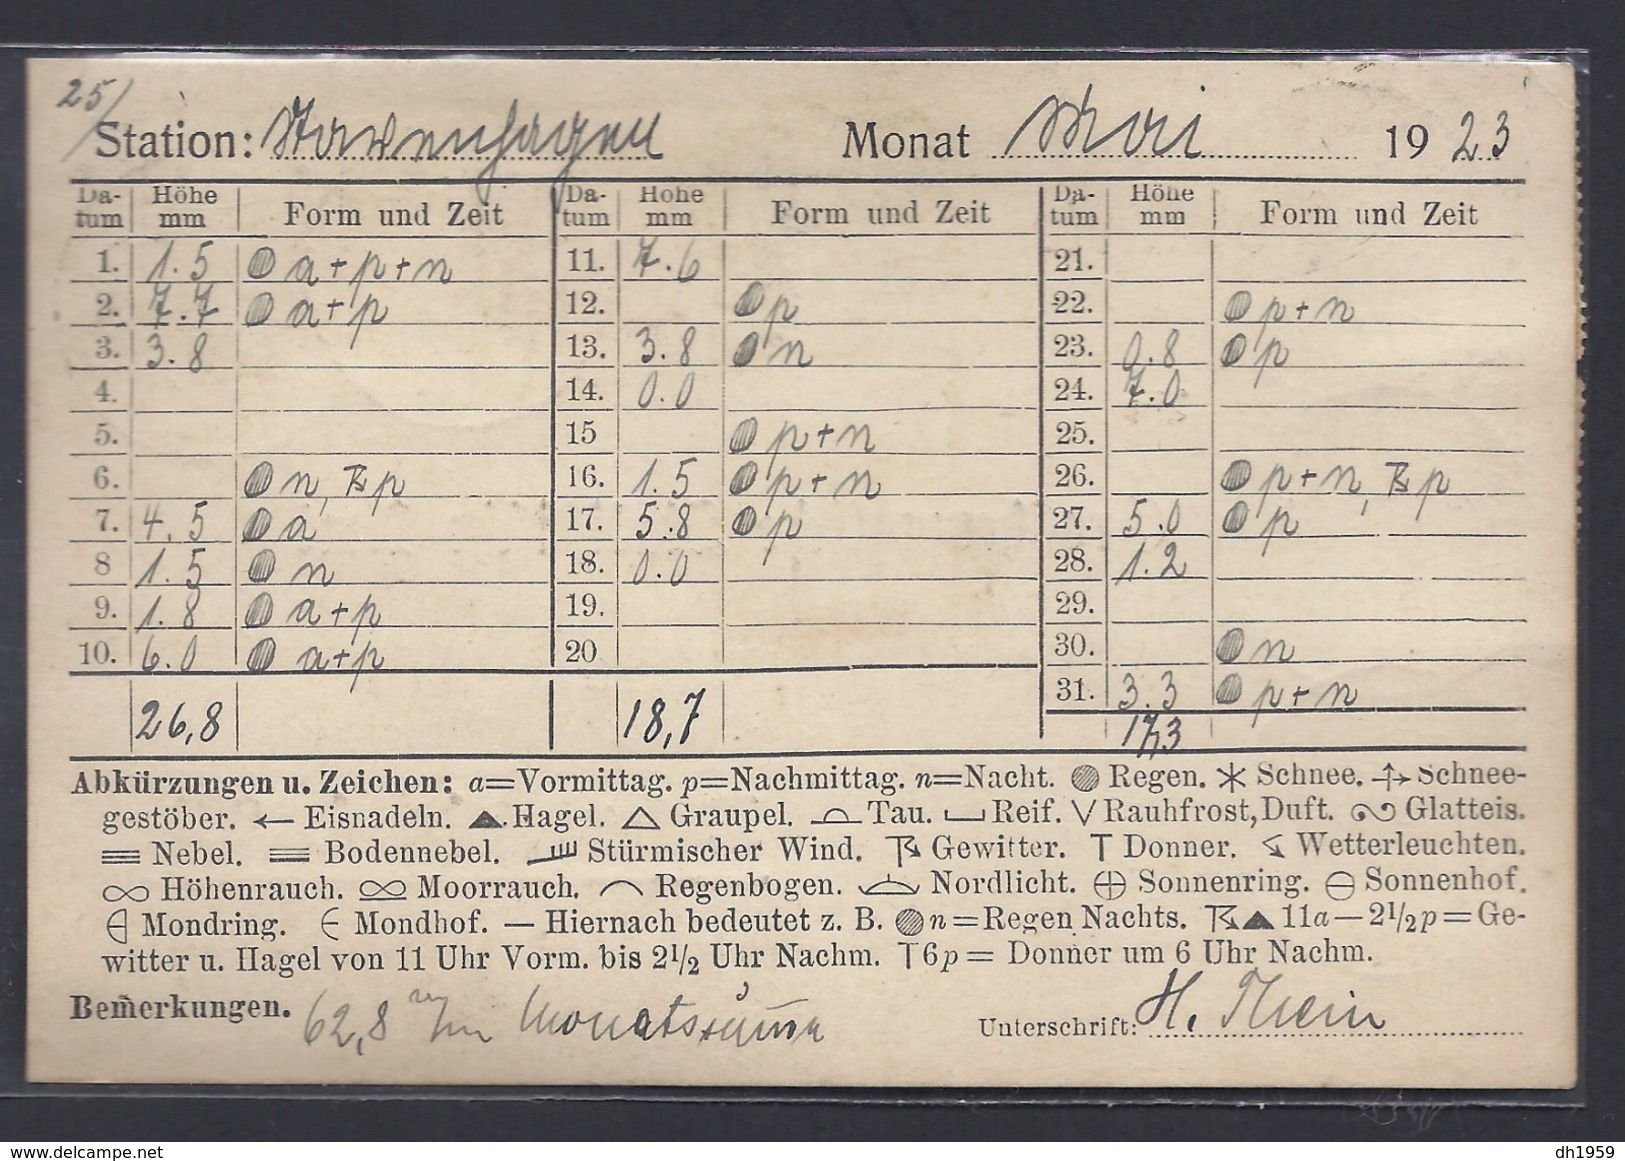 POSTKARTE Nach SCHWERIN DIENSTMARKEN SERVICE MECKLENBURG STATISTISCHES AMT METEOROLOGIE WETTER MAI 1923 - Schwerin